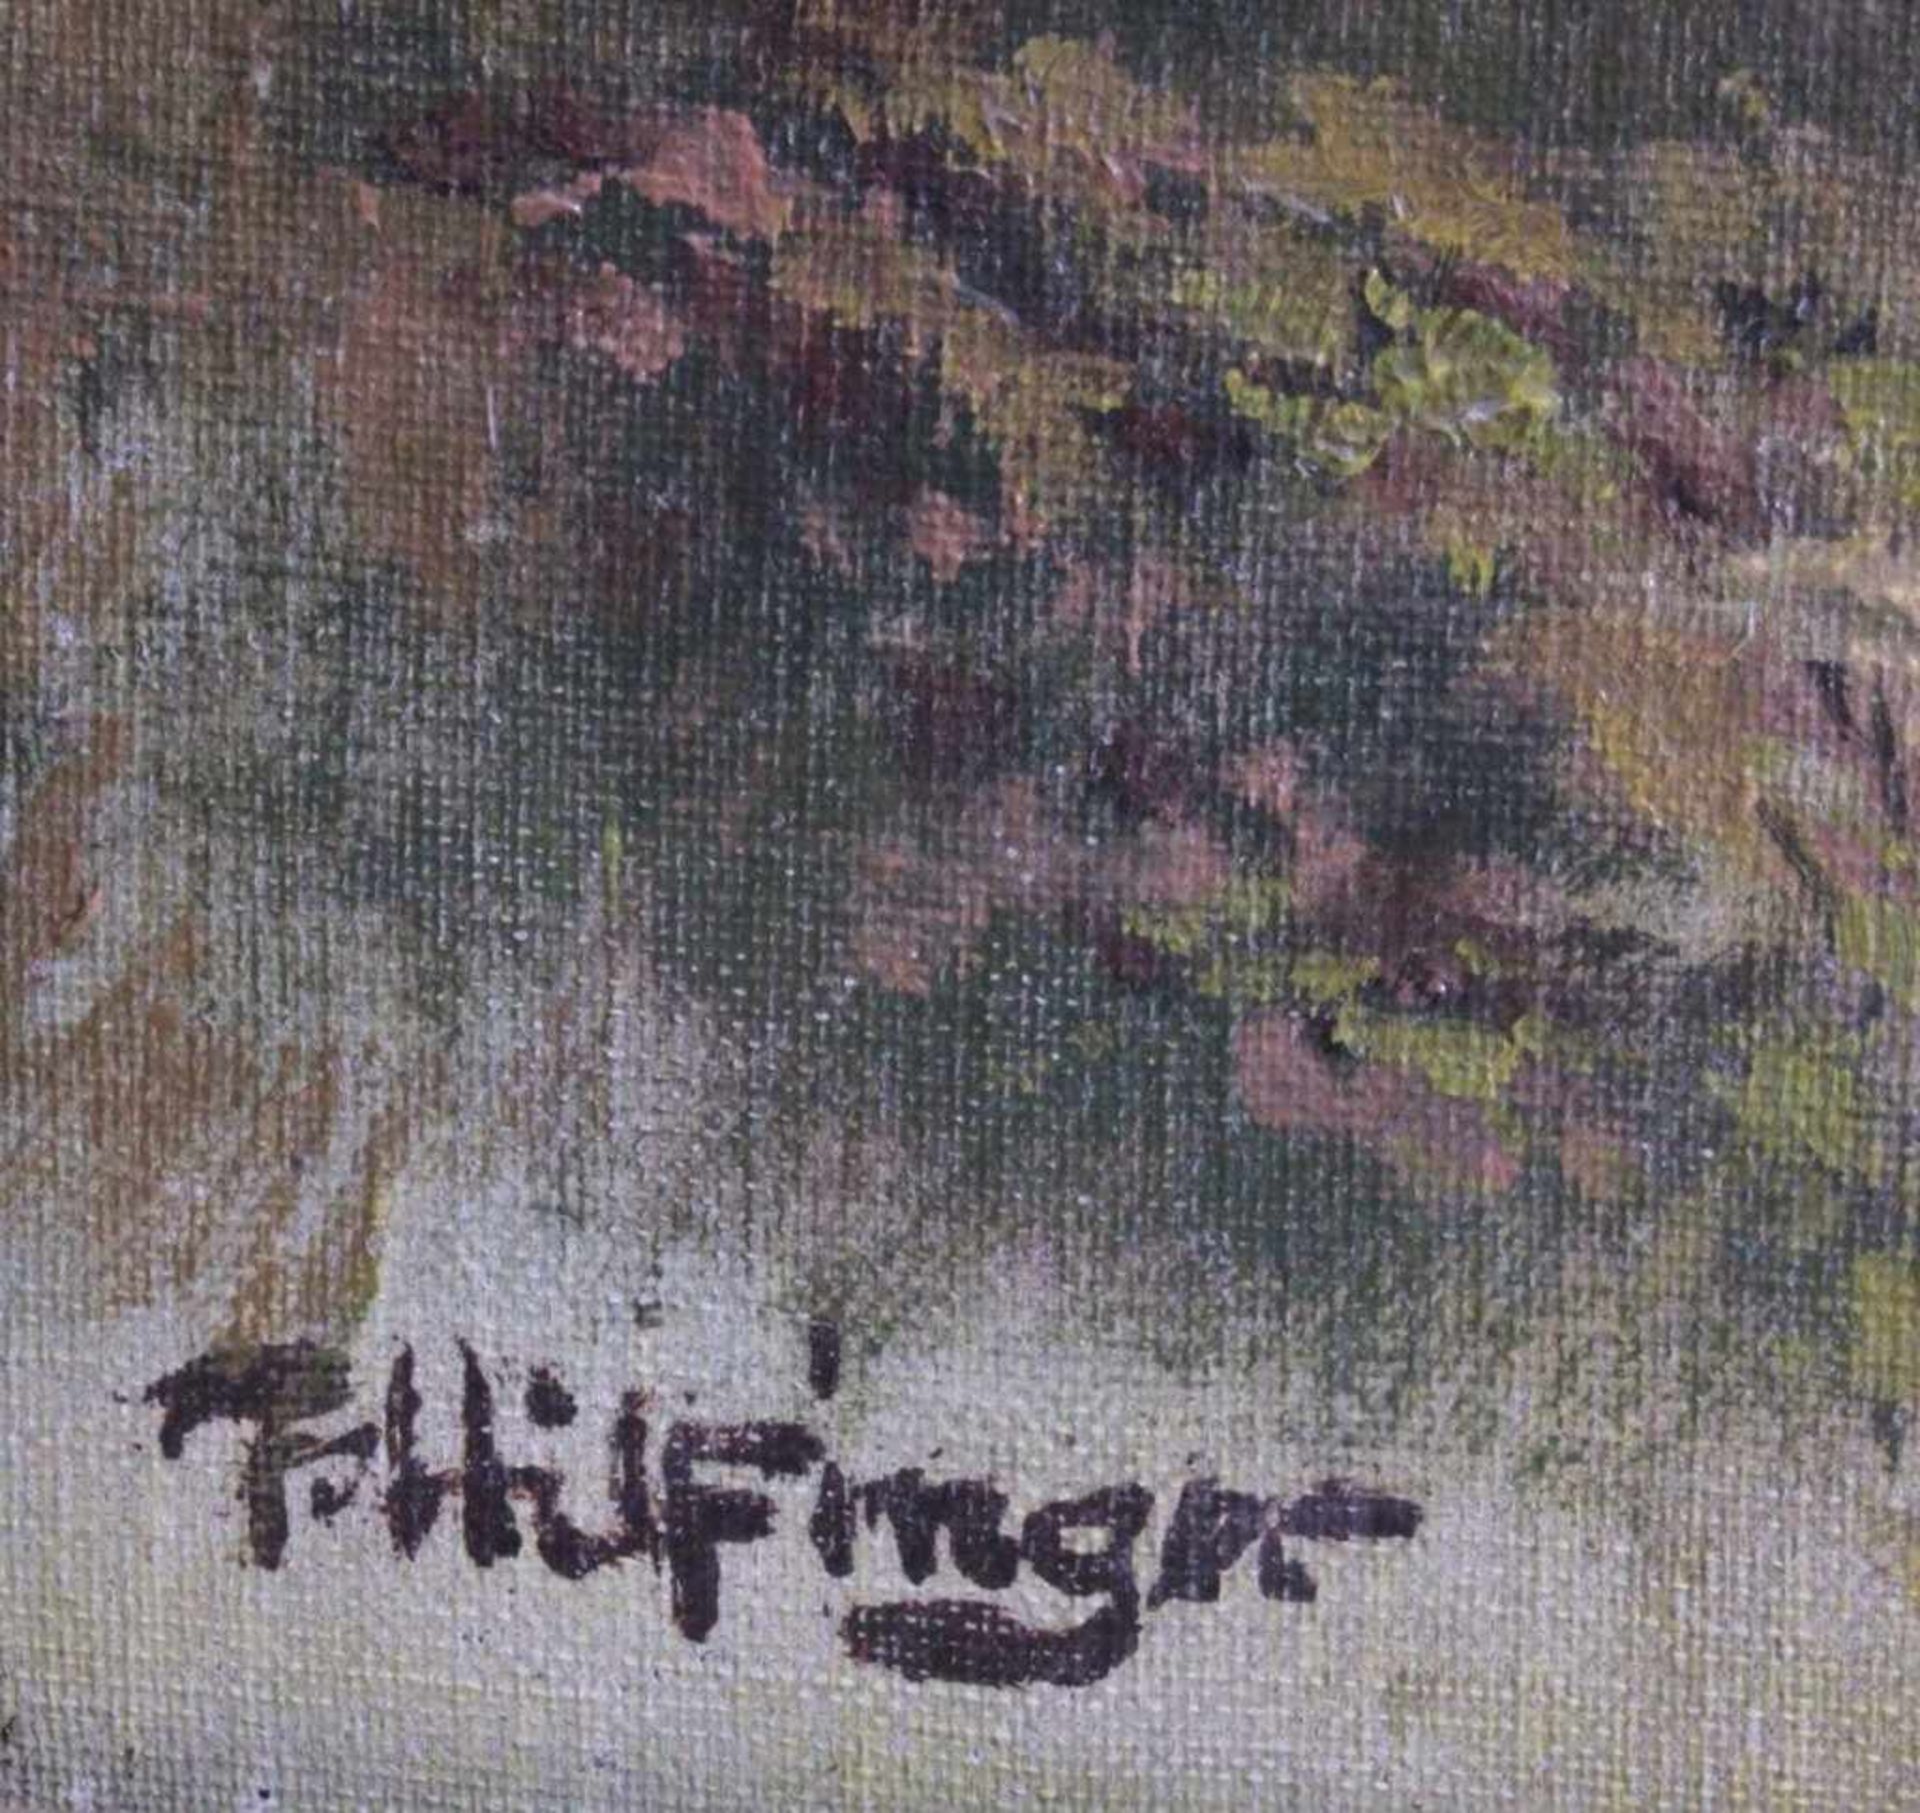 F. Hilfinger ?-?, Sommerliche Landschaft mit KircheÖl auf Leinwand gemalt, unten links signiert, - Image 3 of 4